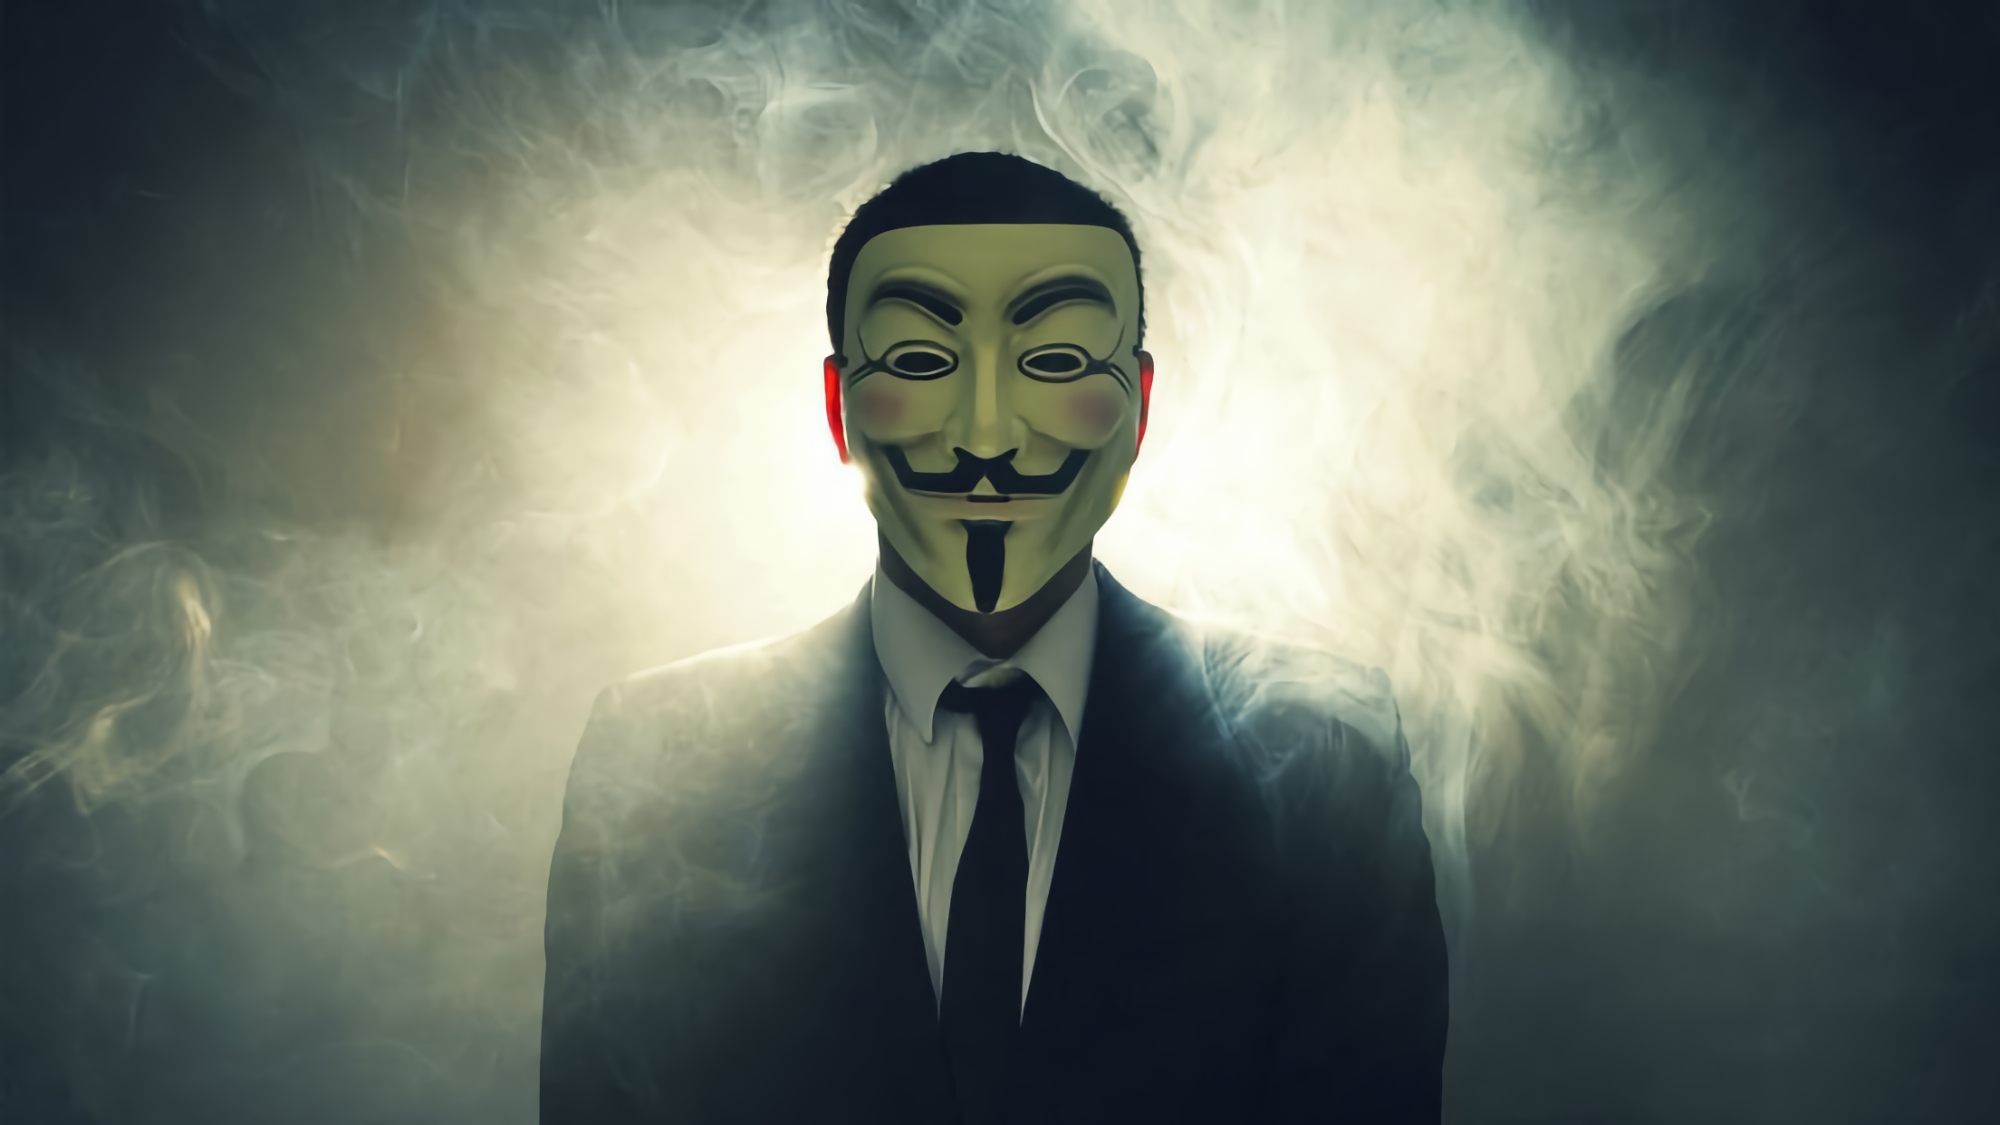 Anonimowi hakerzy włamują się do rosyjskiego ministerstwa obrony i wyciekają dane ponad 300 tys. osób, które mają zostać zmobilizowane